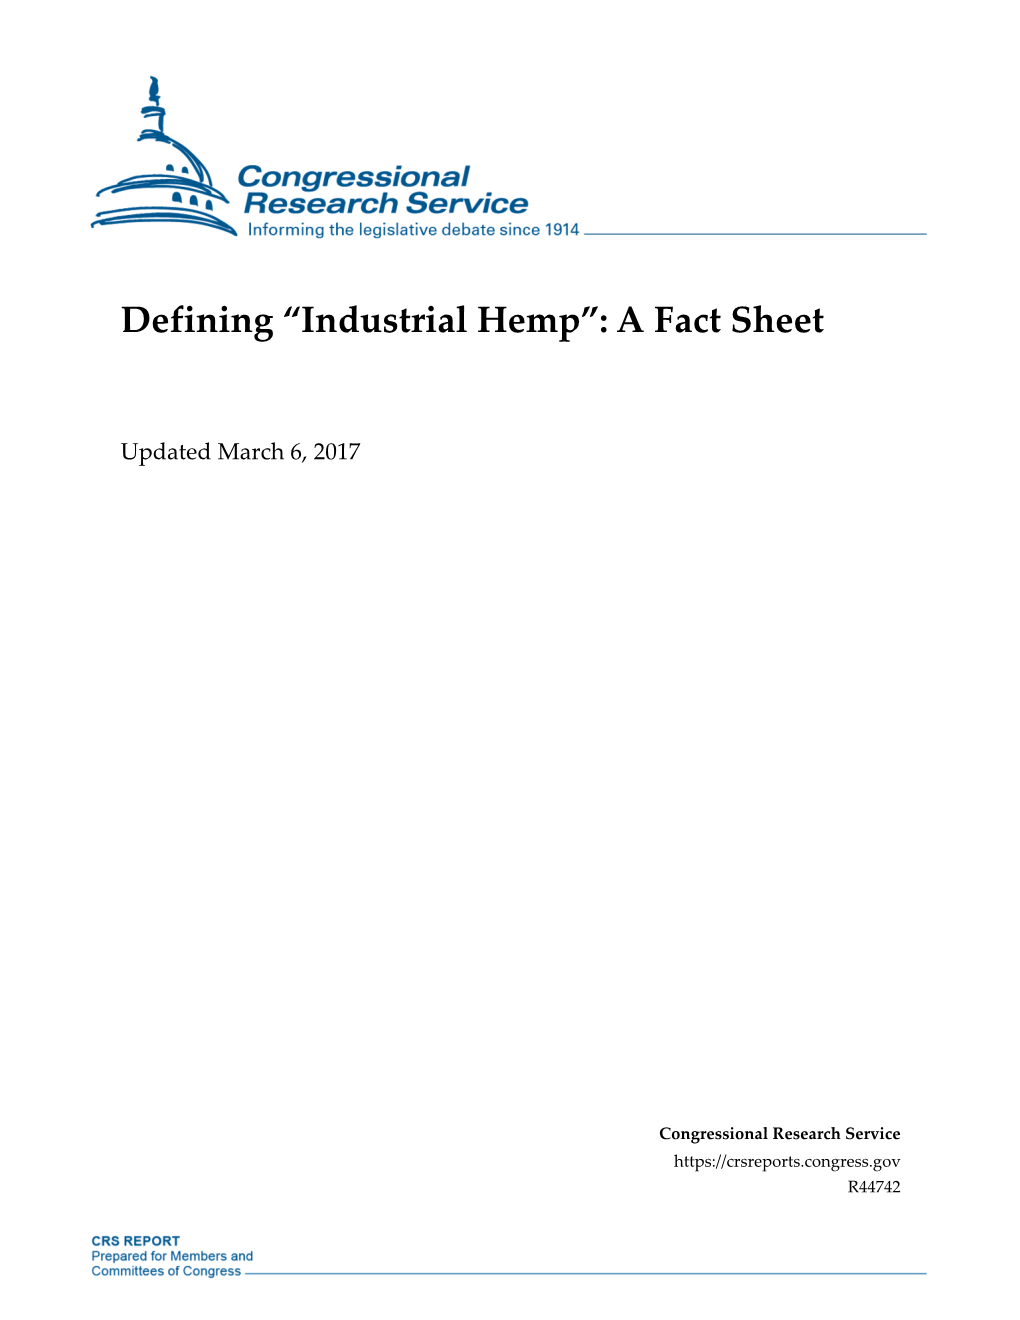 Industrial Hemp”: a Fact Sheet